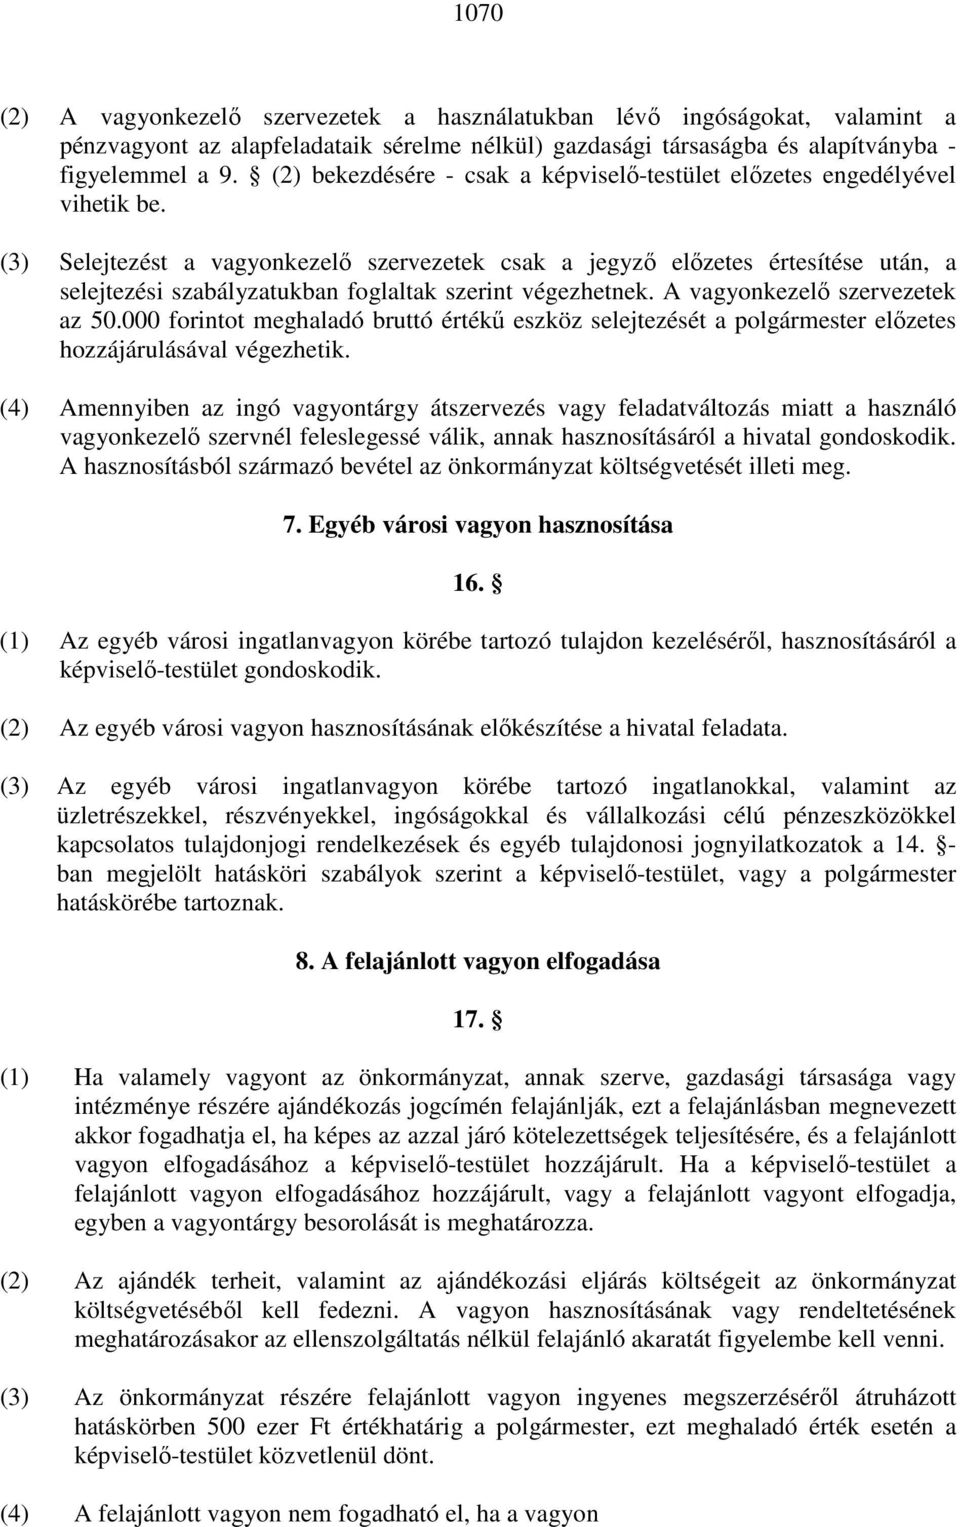 (3) Selejtezést a vagyonkezelı szervezetek csak a jegyzı elızetes értesítése után, a selejtezési szabályzatukban foglaltak szerint végezhetnek. A vagyonkezelı szervezetek az 50.